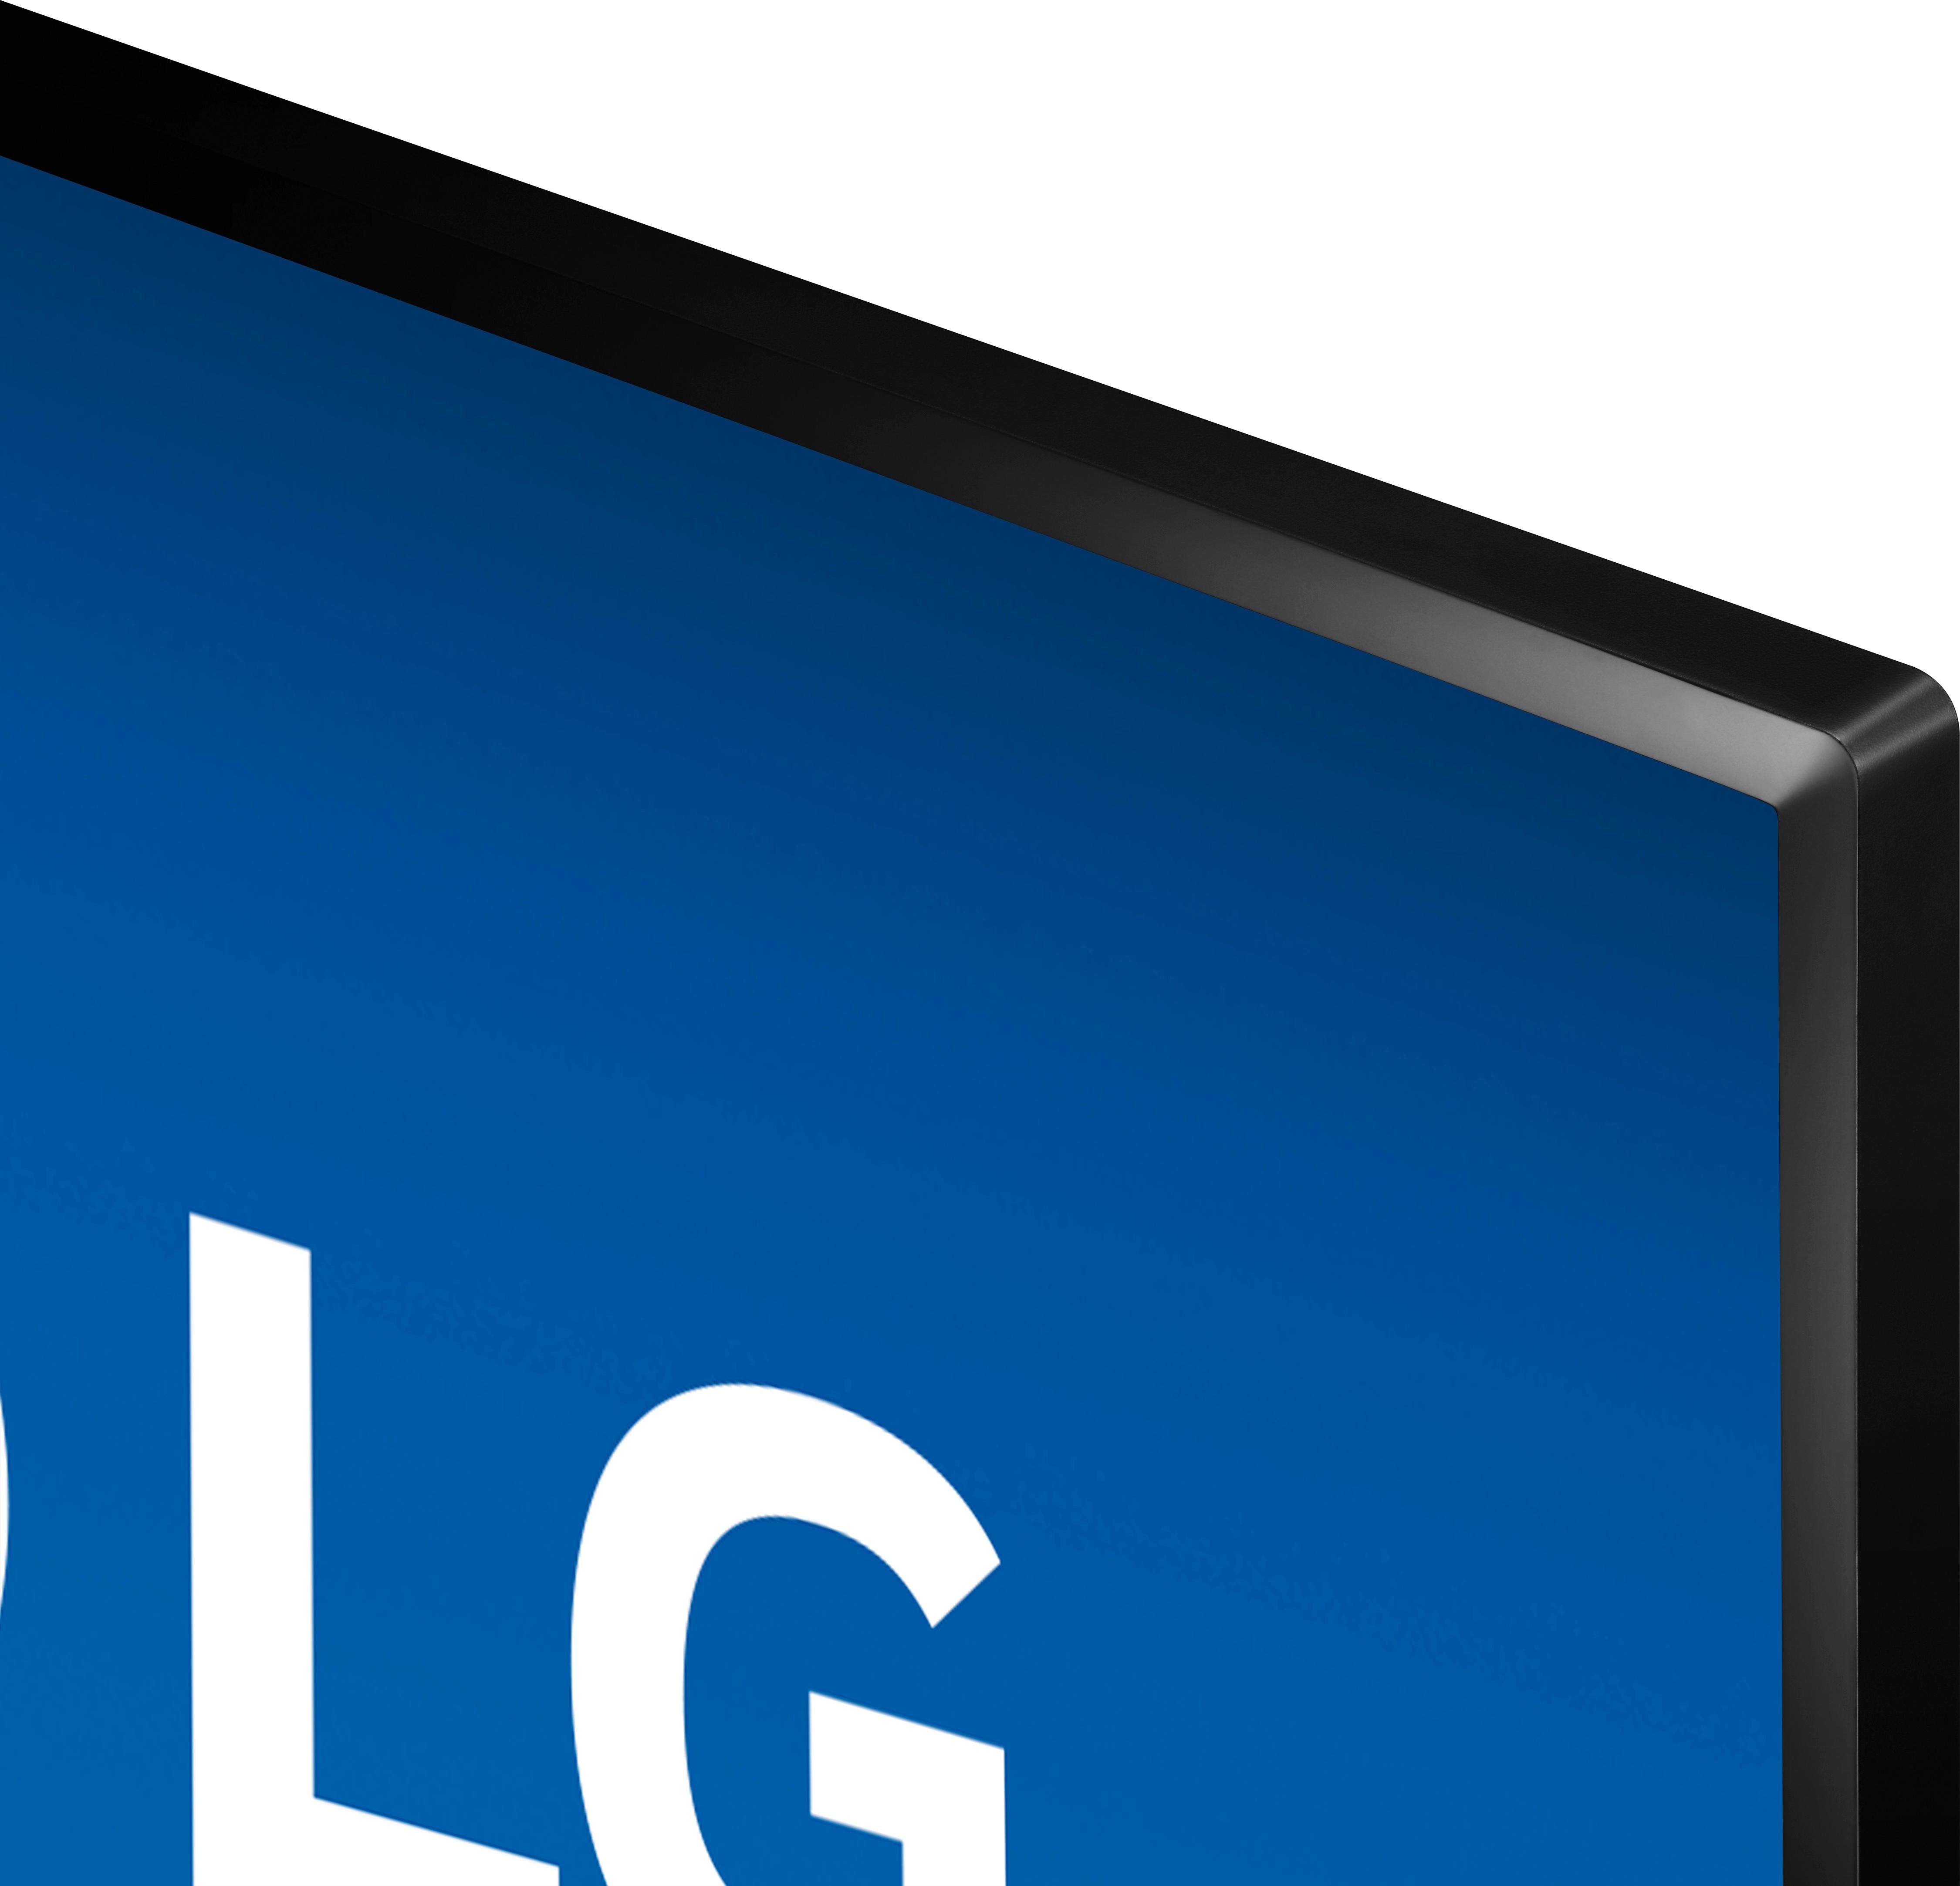 LG 43LJ550M: 43-inch Full HD 1080p Smart LED TV